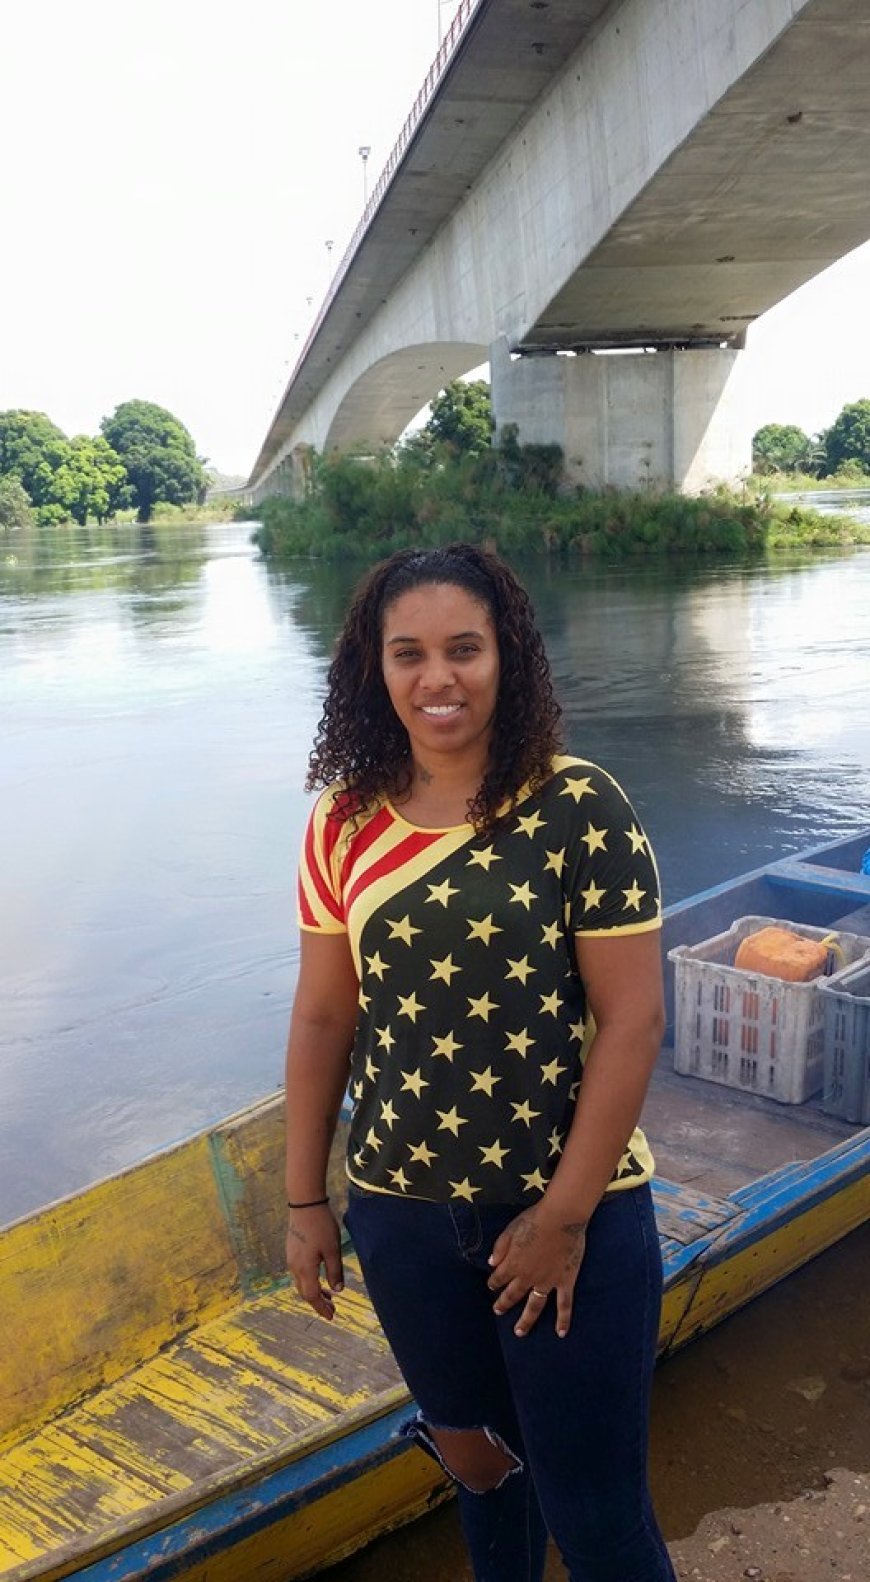 Ana Borges uma bravense em Angola desde 2015